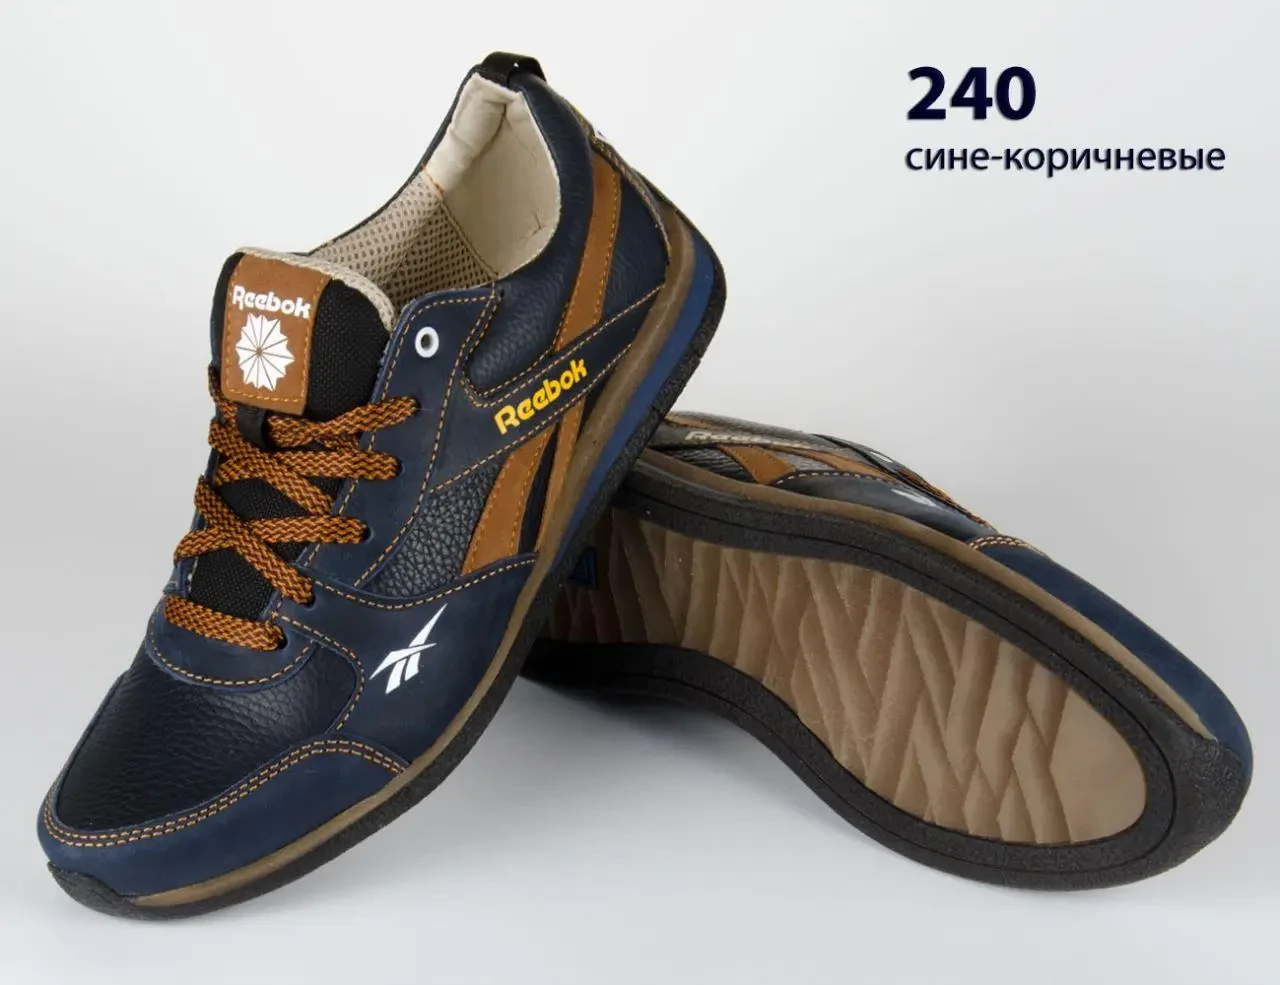 Шкіряні кросівки Reebok  (240 синьо-коричнева) чоловічі спортивні кросівки шкіряні чоловічі